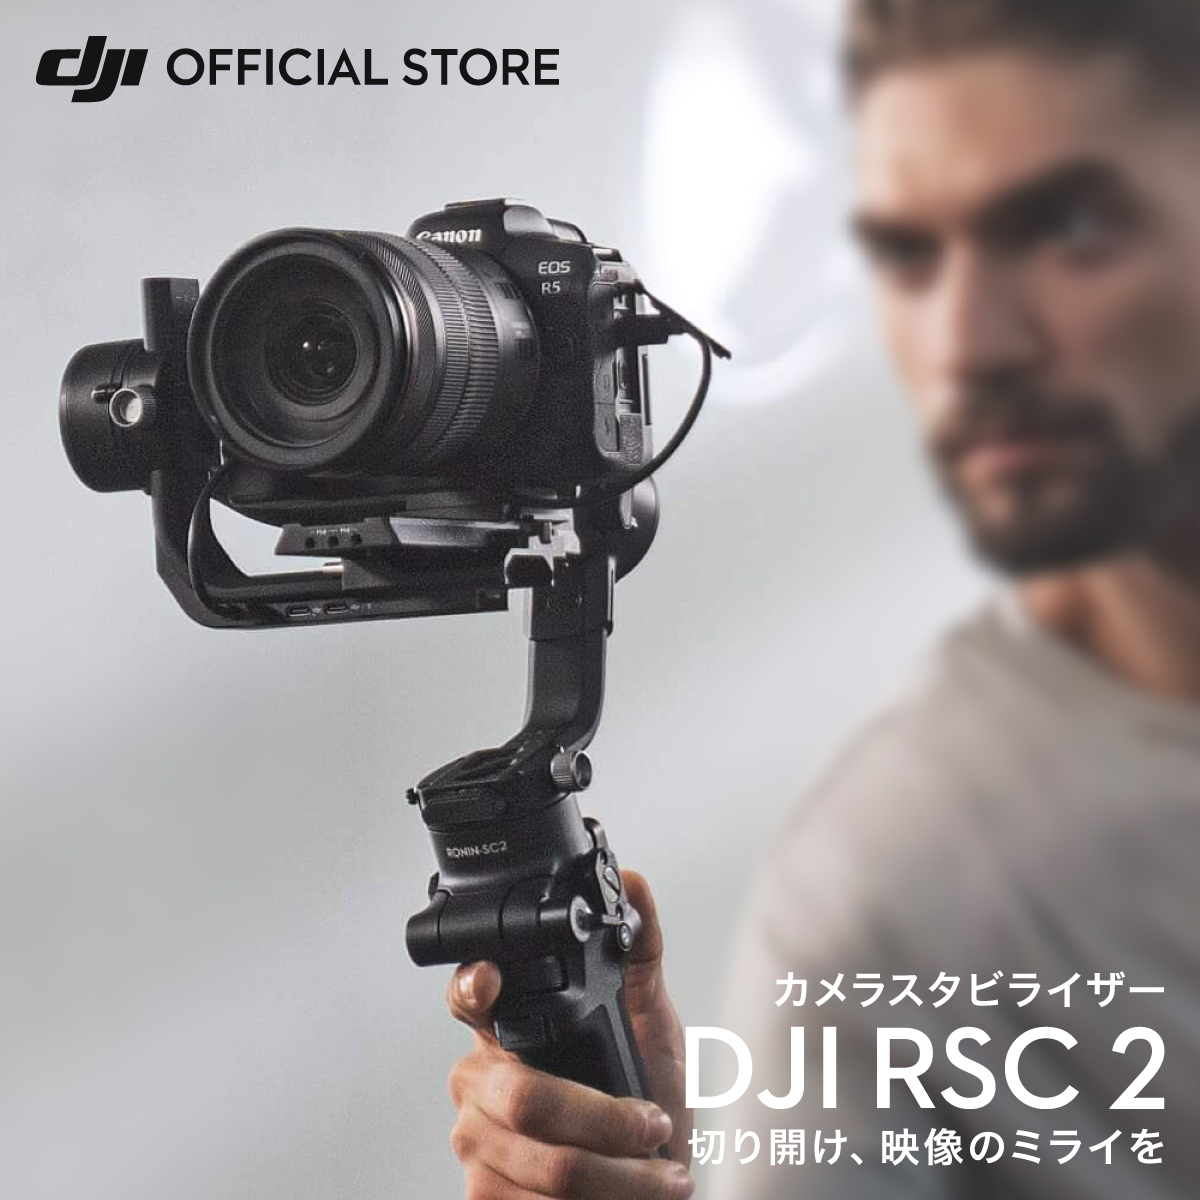 テレビ/映像機器 その他 楽天市場】DJI RSC 2 スタビライザー 3軸 ジンバル カメラ ビデオ 